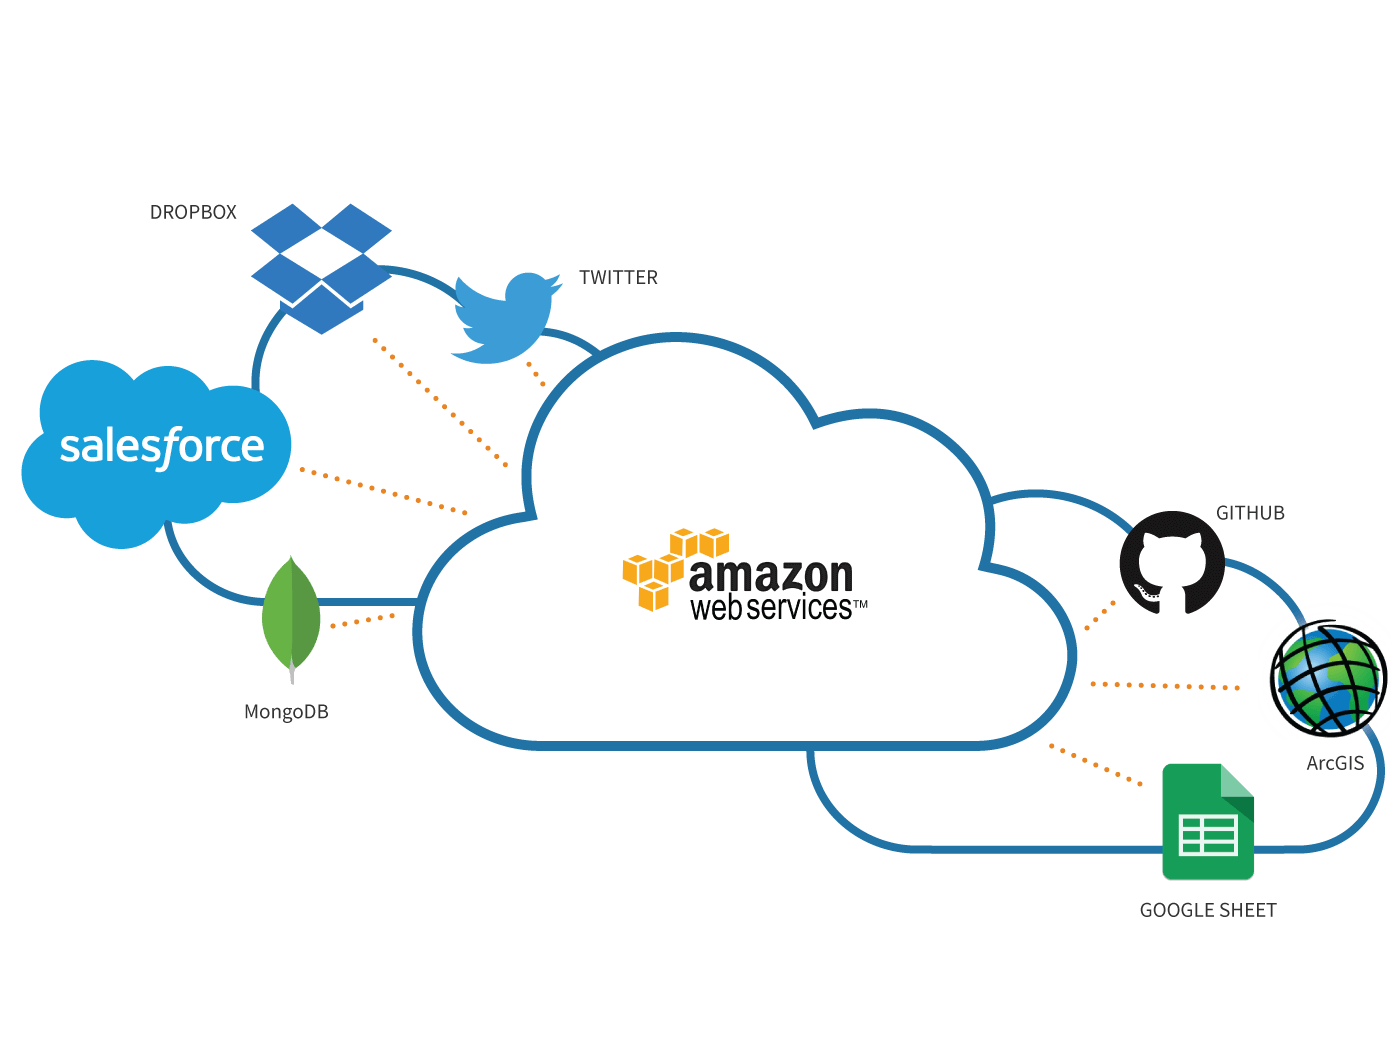 Amazon облачные сервисы. Облачный сервер Амазон. Компания Amazon облачные технологии. AWS сервис. Сервисы облачных вычислений Amazon web services.